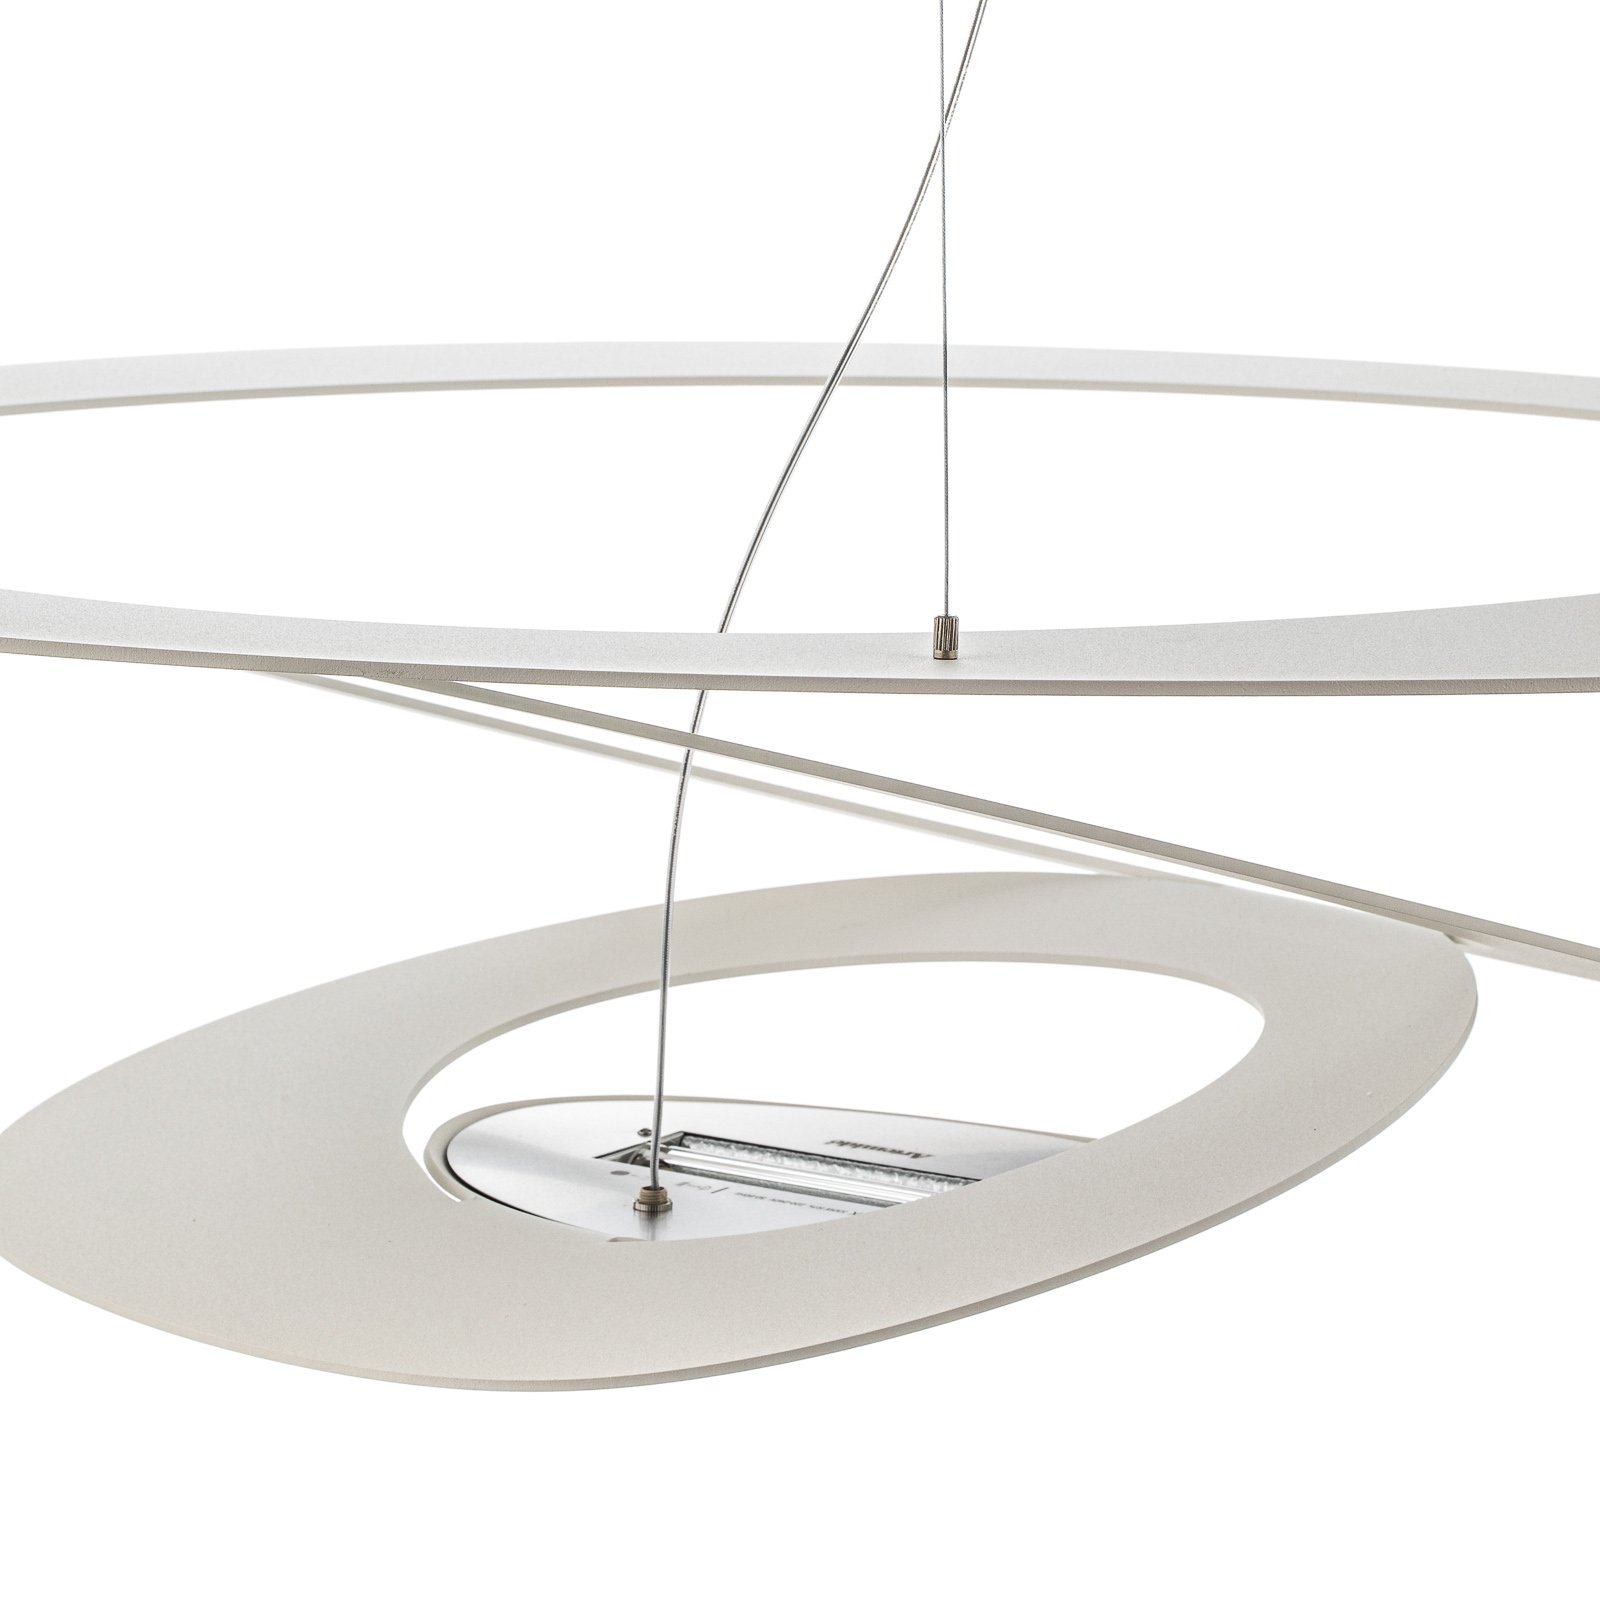 Artemide Price - designer függő lámpa 94x97 cm